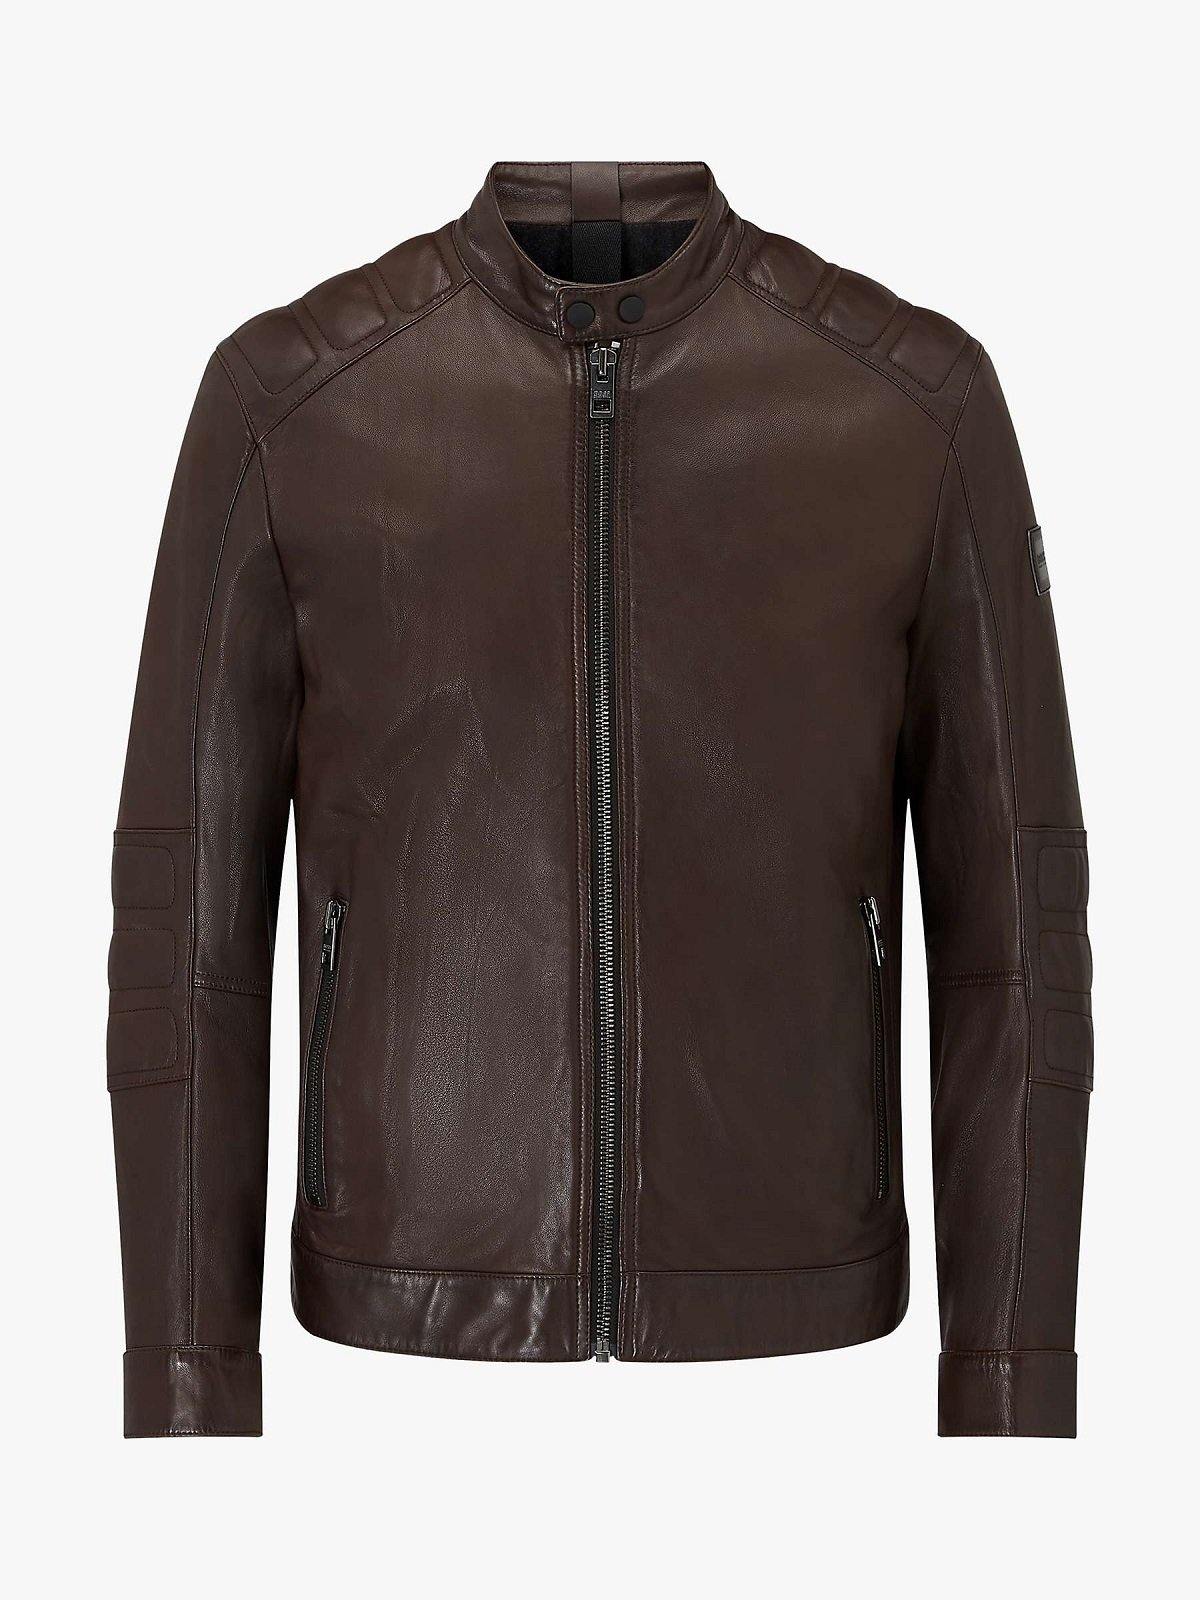 Vintage Brown Leather Biker Jacket for Men